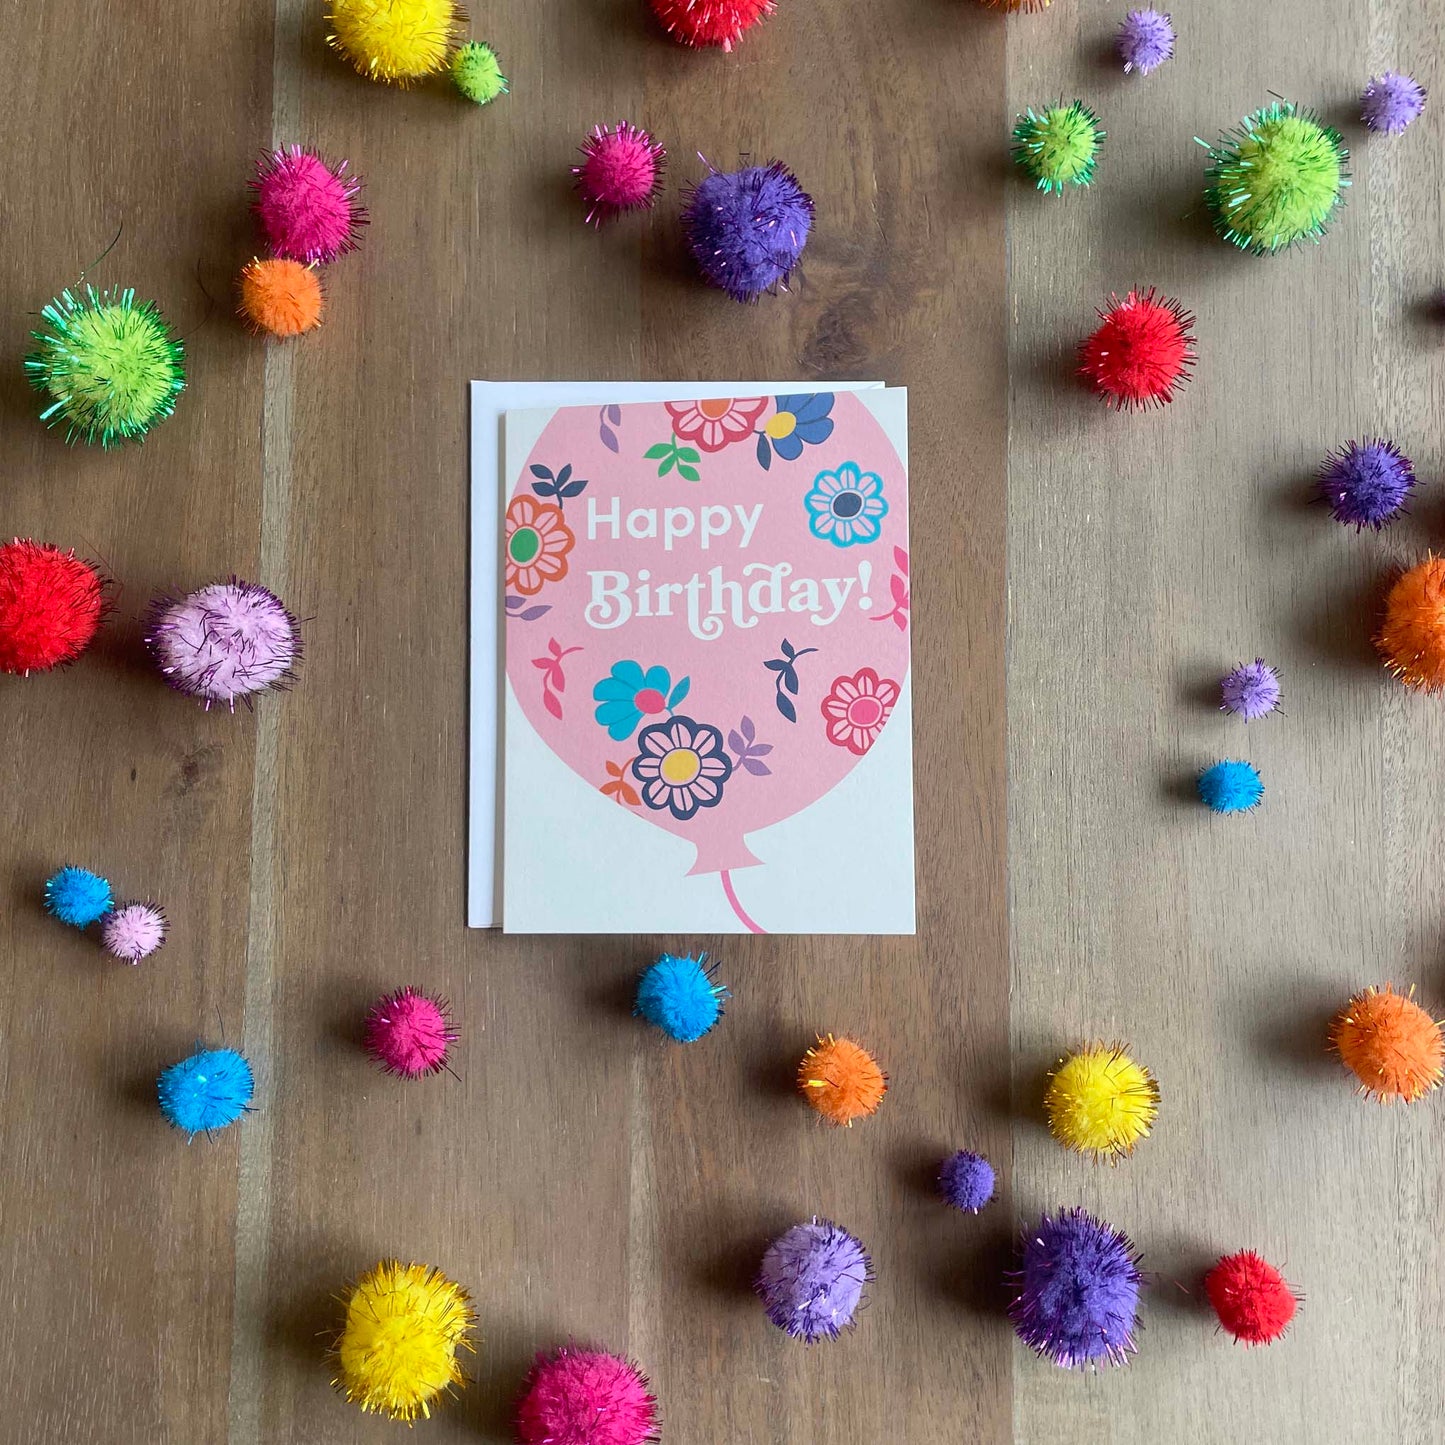 Birthday Balloon Flores Card